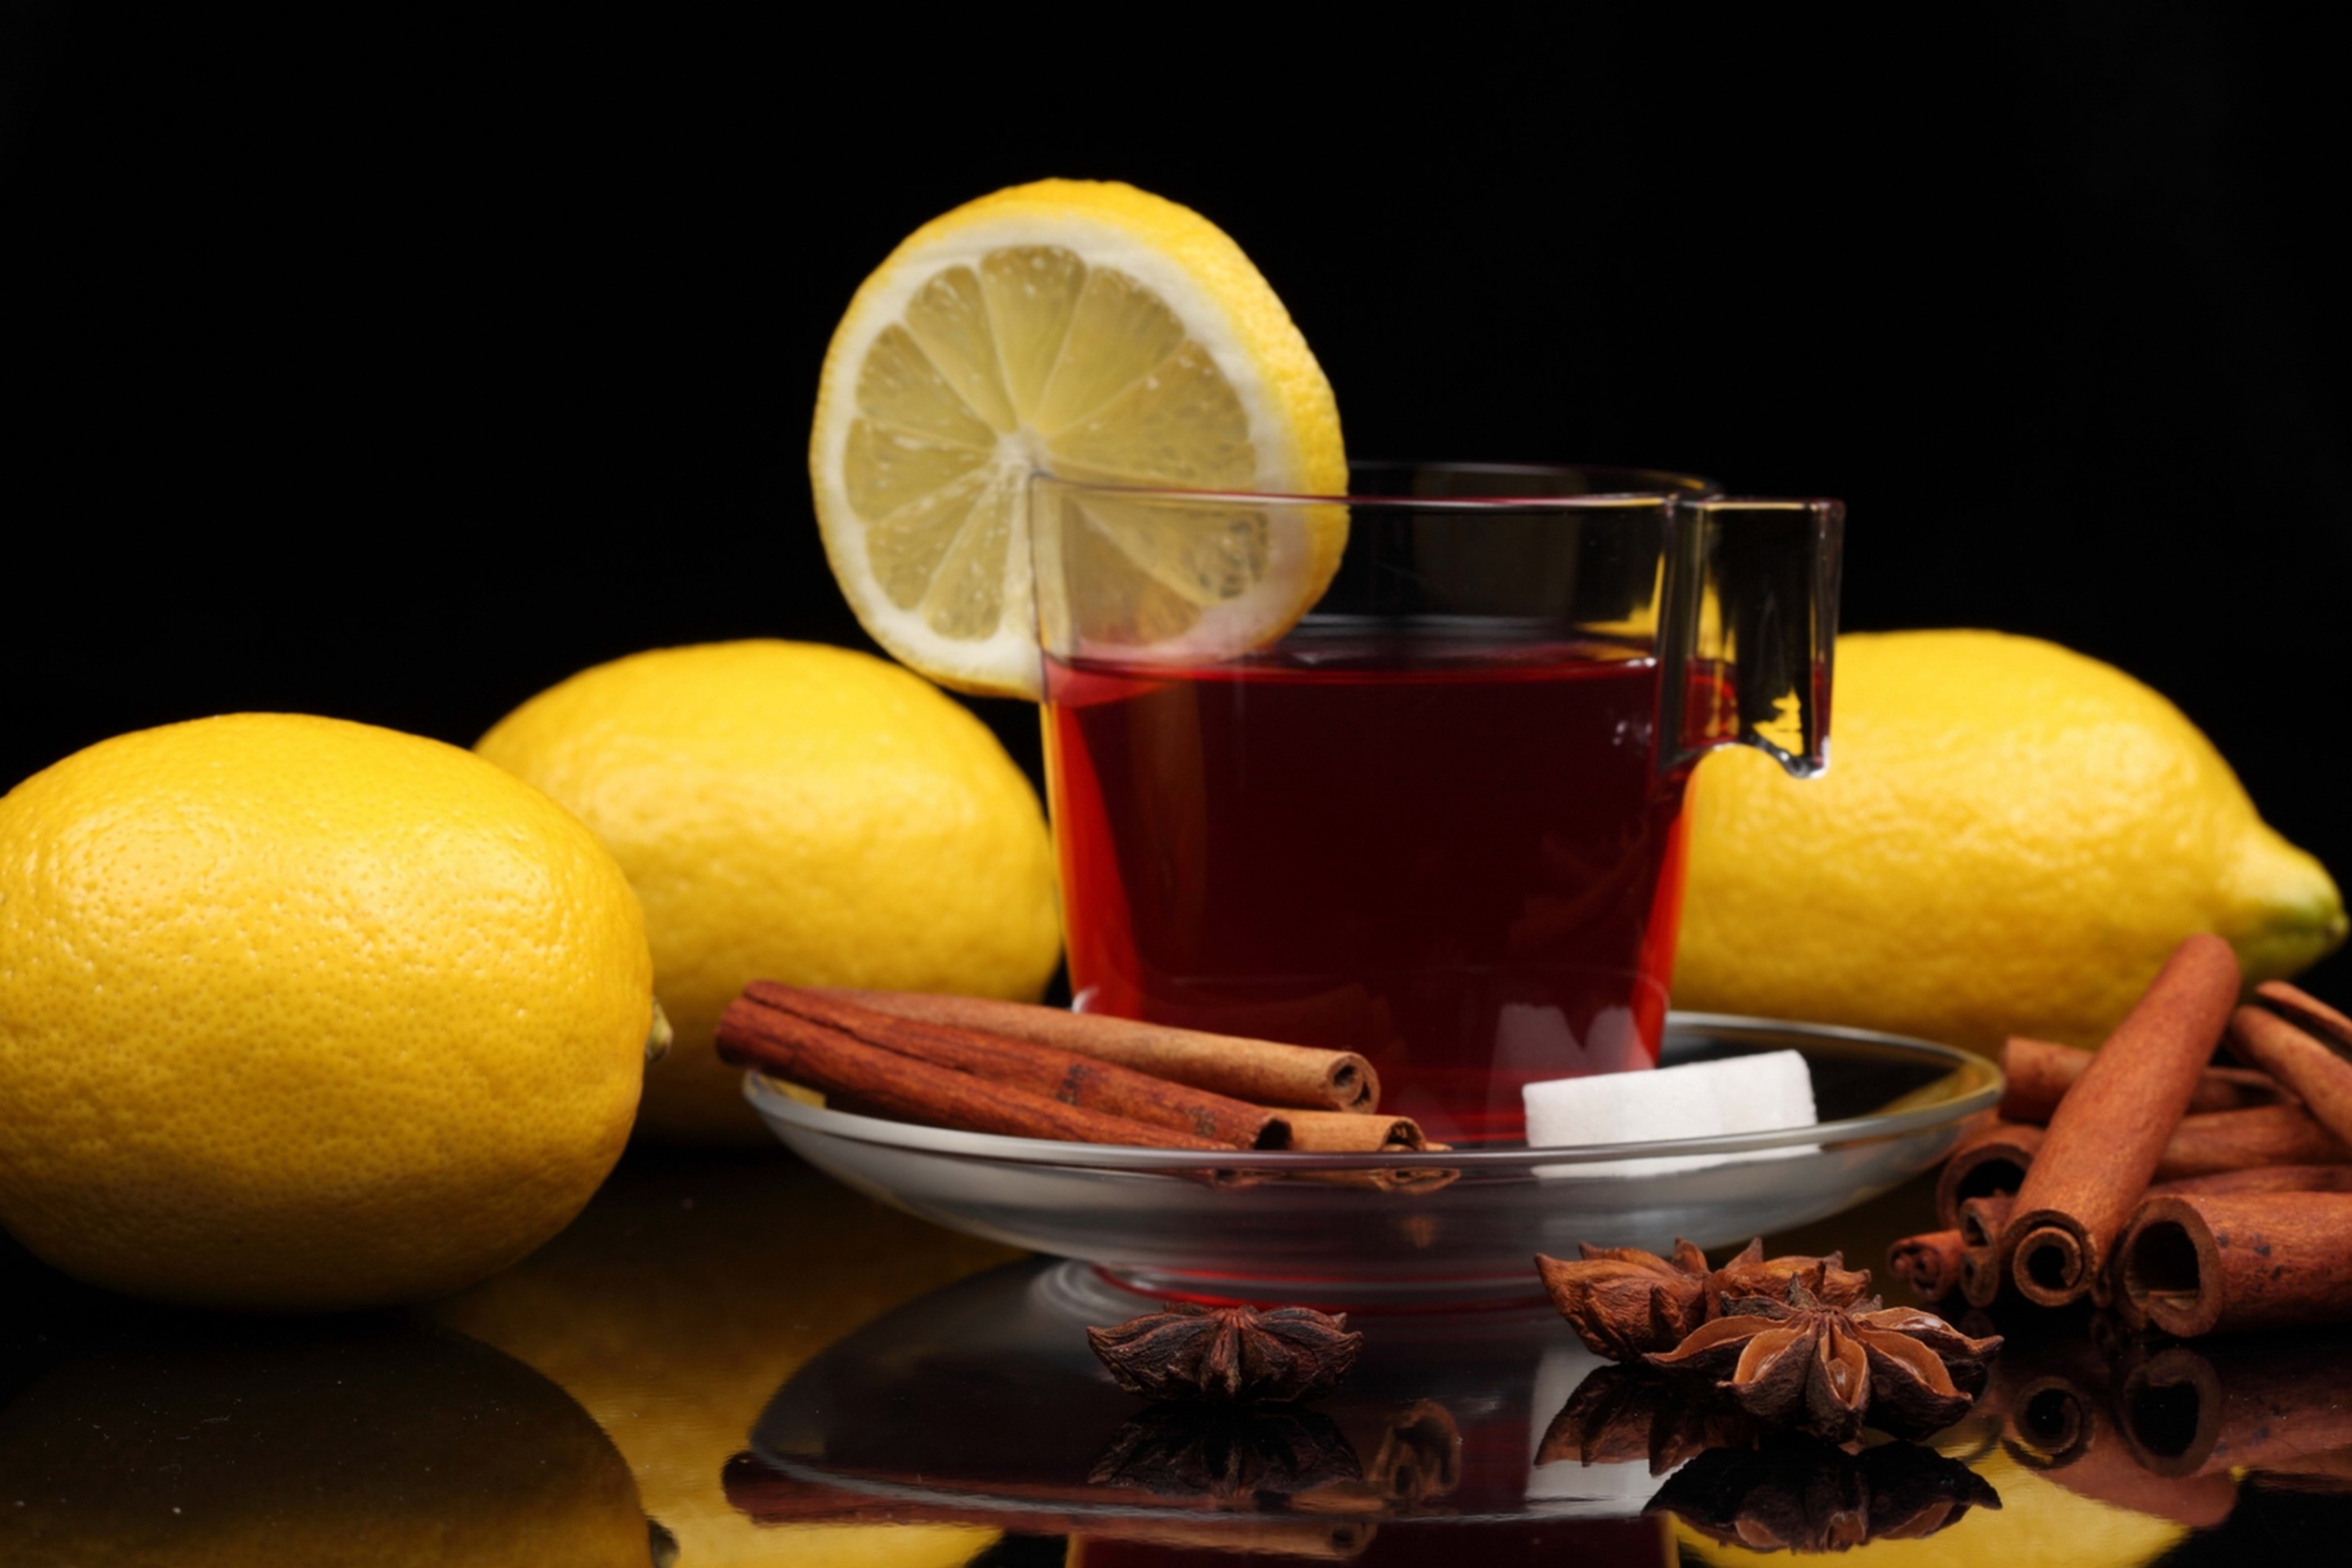 Das Tea with lemon and cinnamon Wallpaper 2880x1920